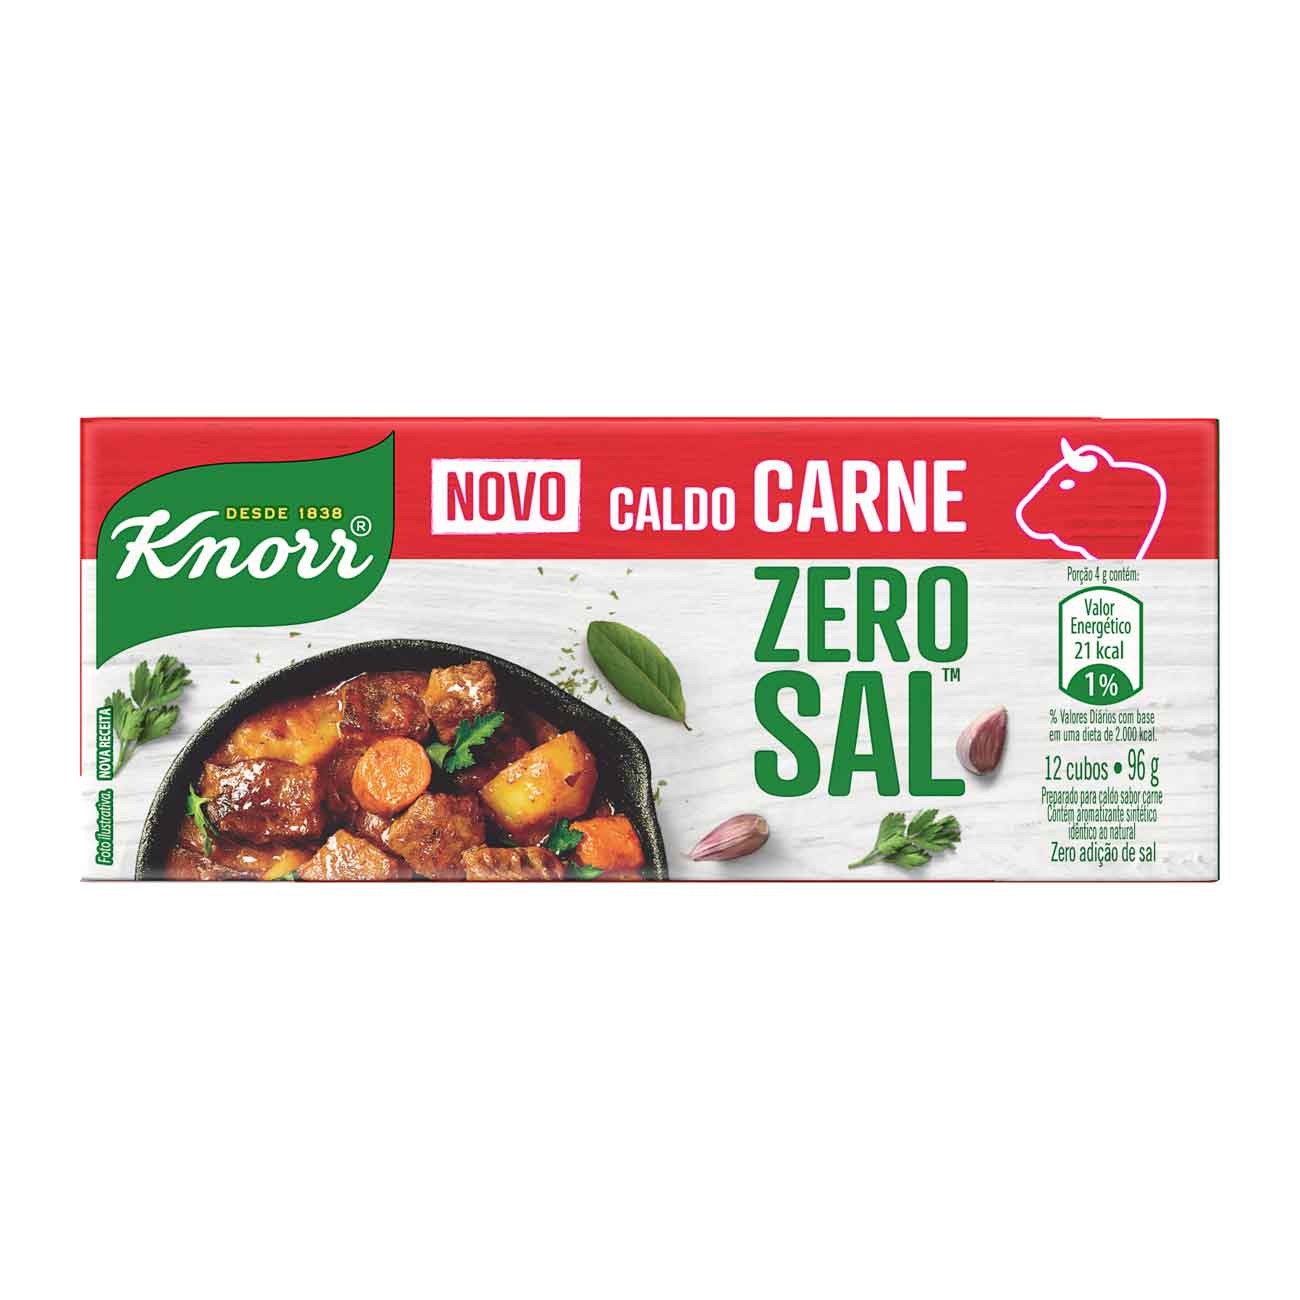 Caldo de Carne Knorr Zero Sal Caixa 96g 12 Tabletes